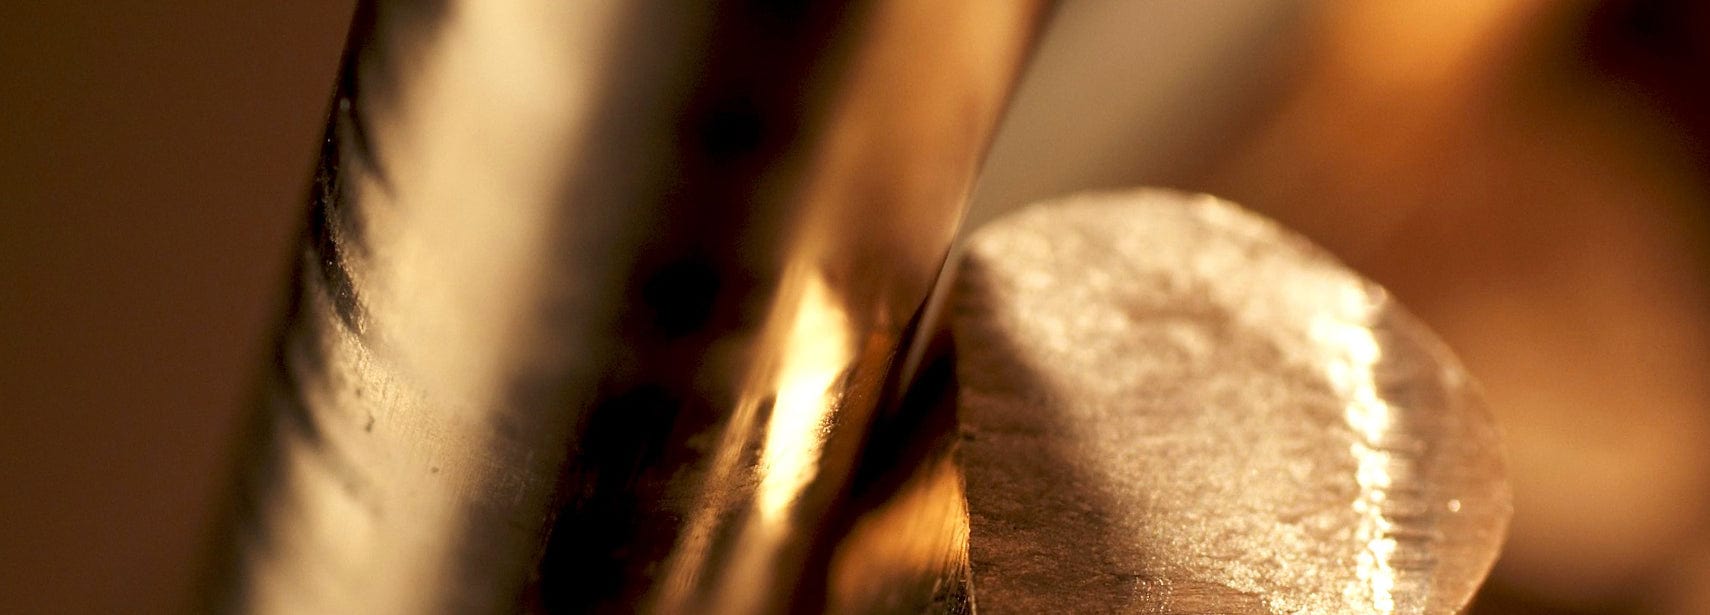 Close up of gold bar